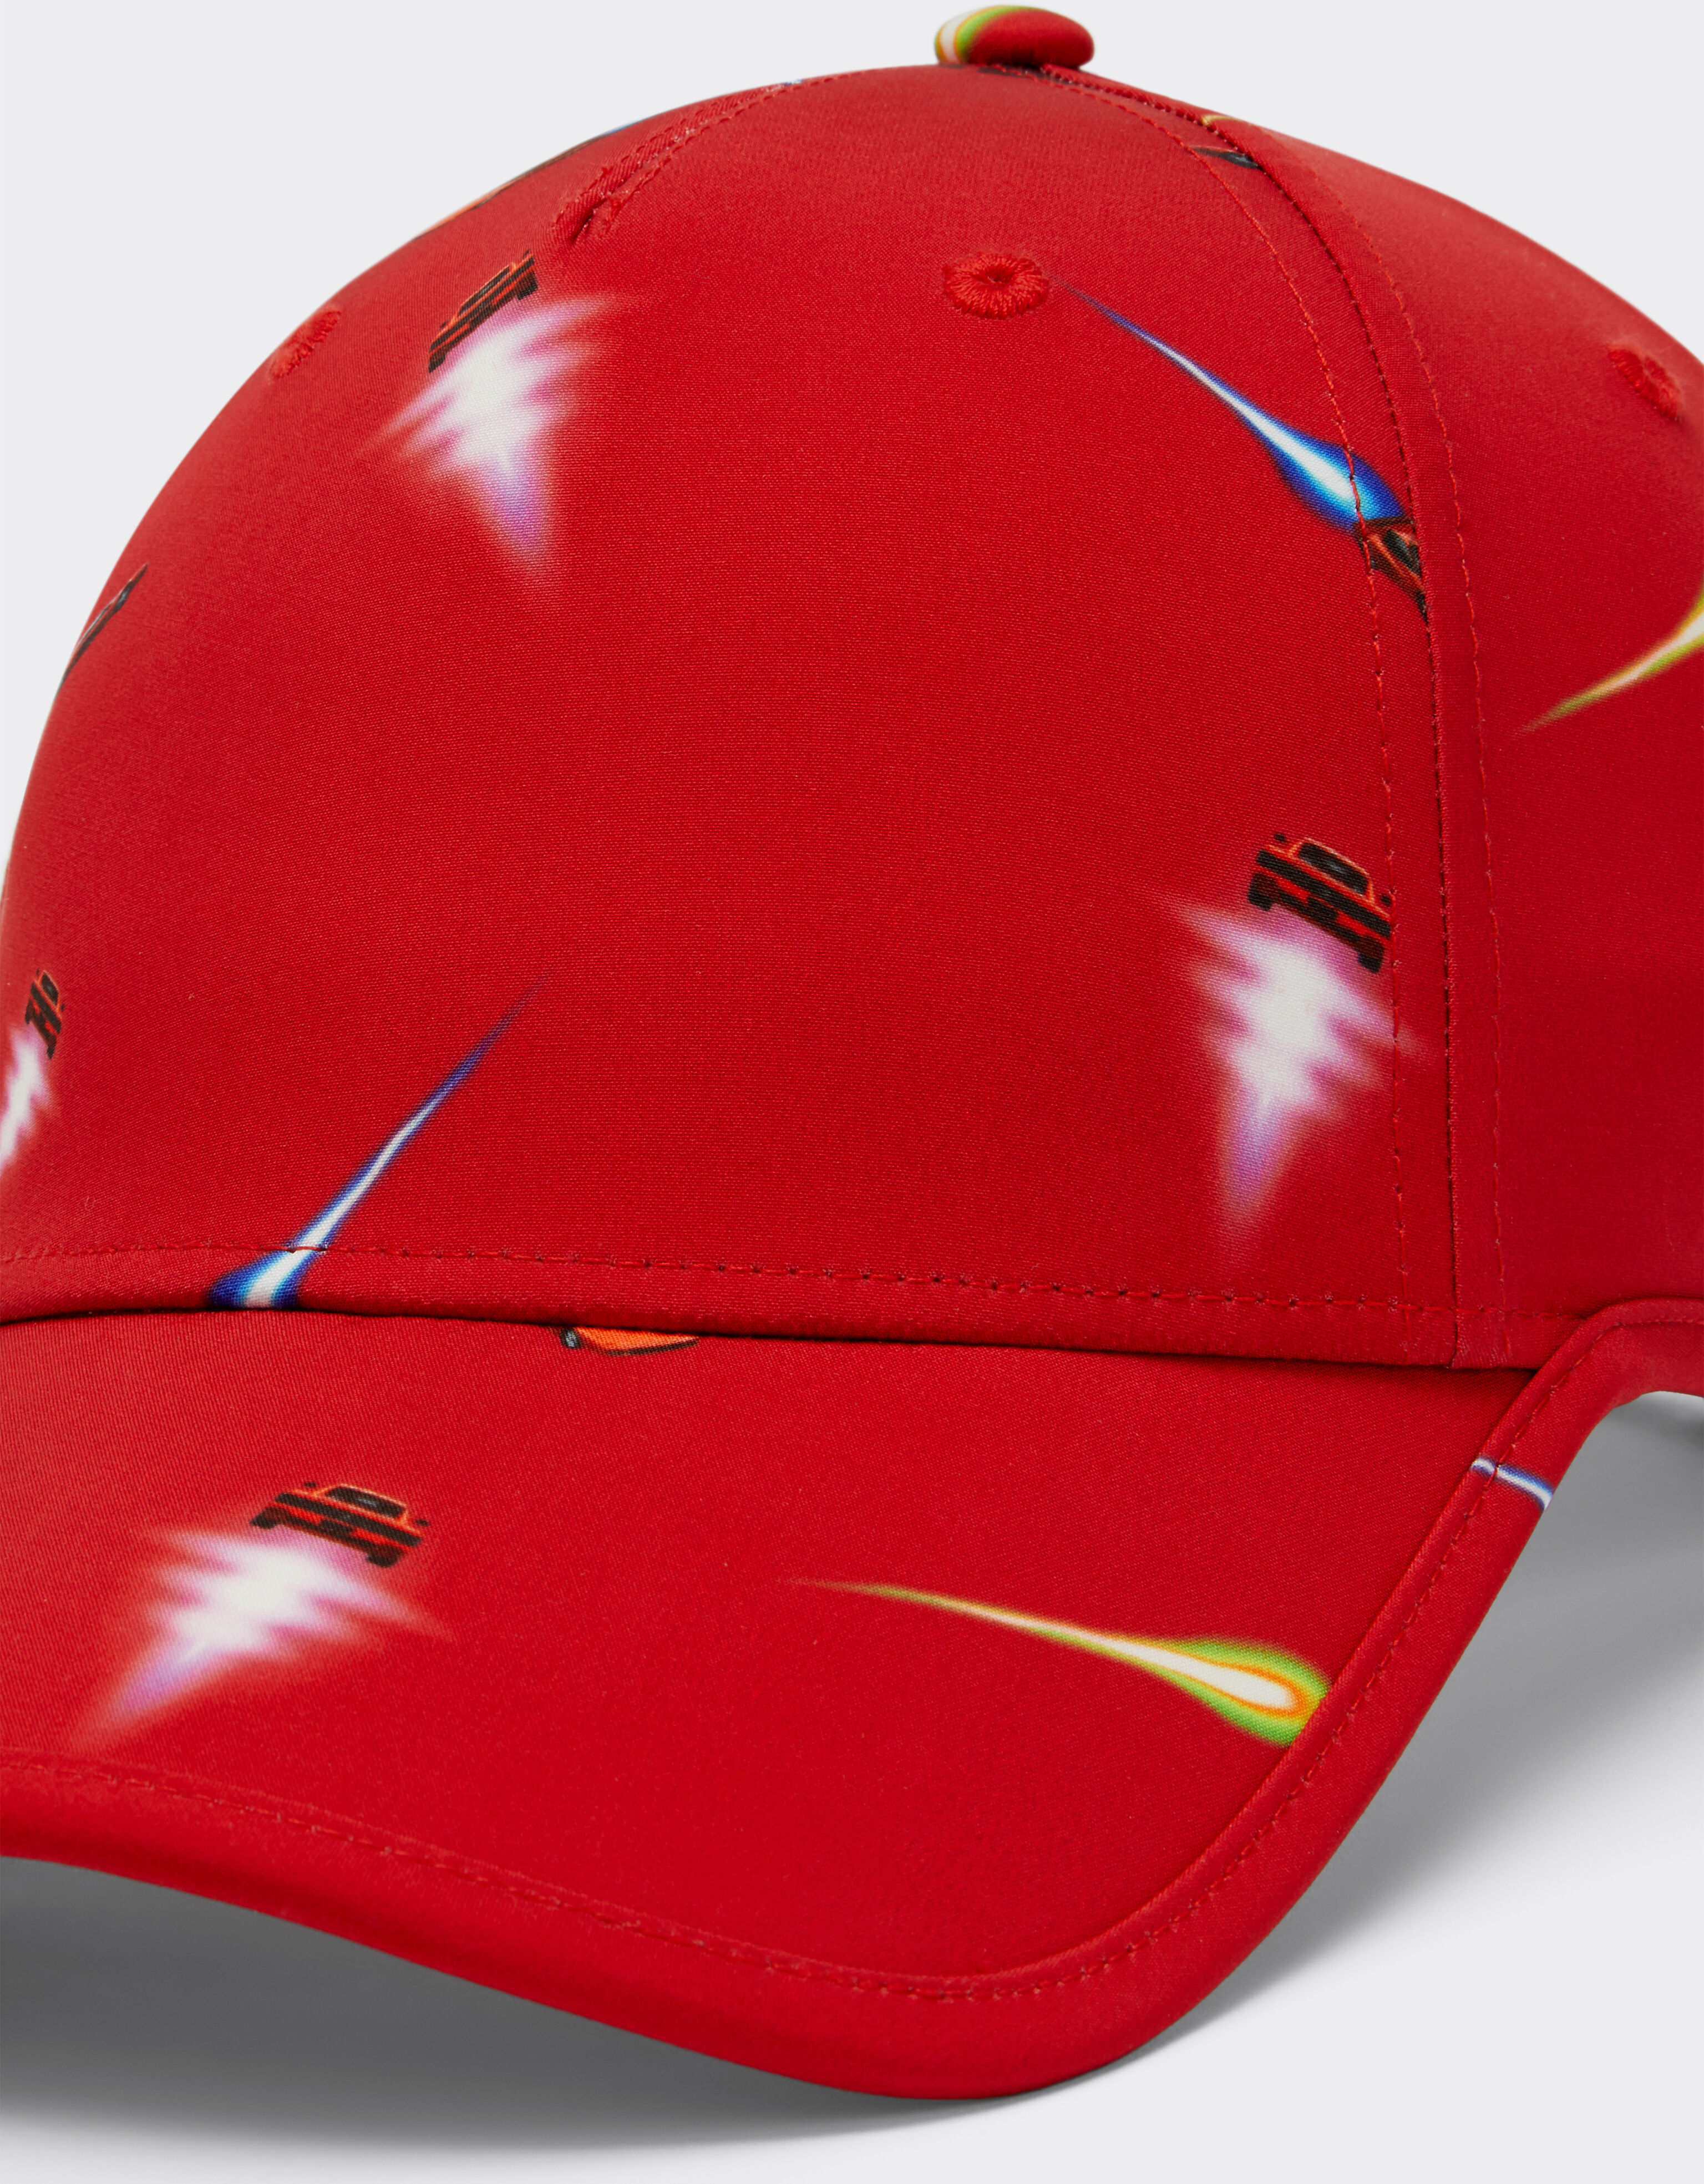 Ferrari Ferrari Cars 印花帽子 Rosso Corsa 红色 20418fK